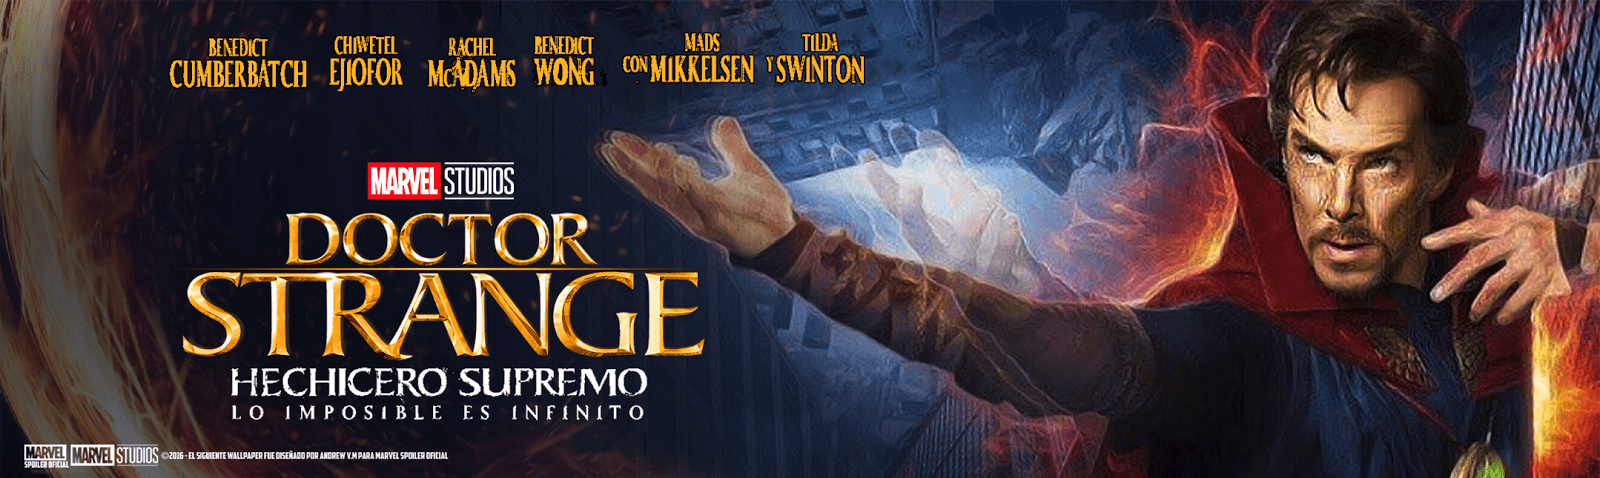 Doctor Strange 4K 2016 big poster